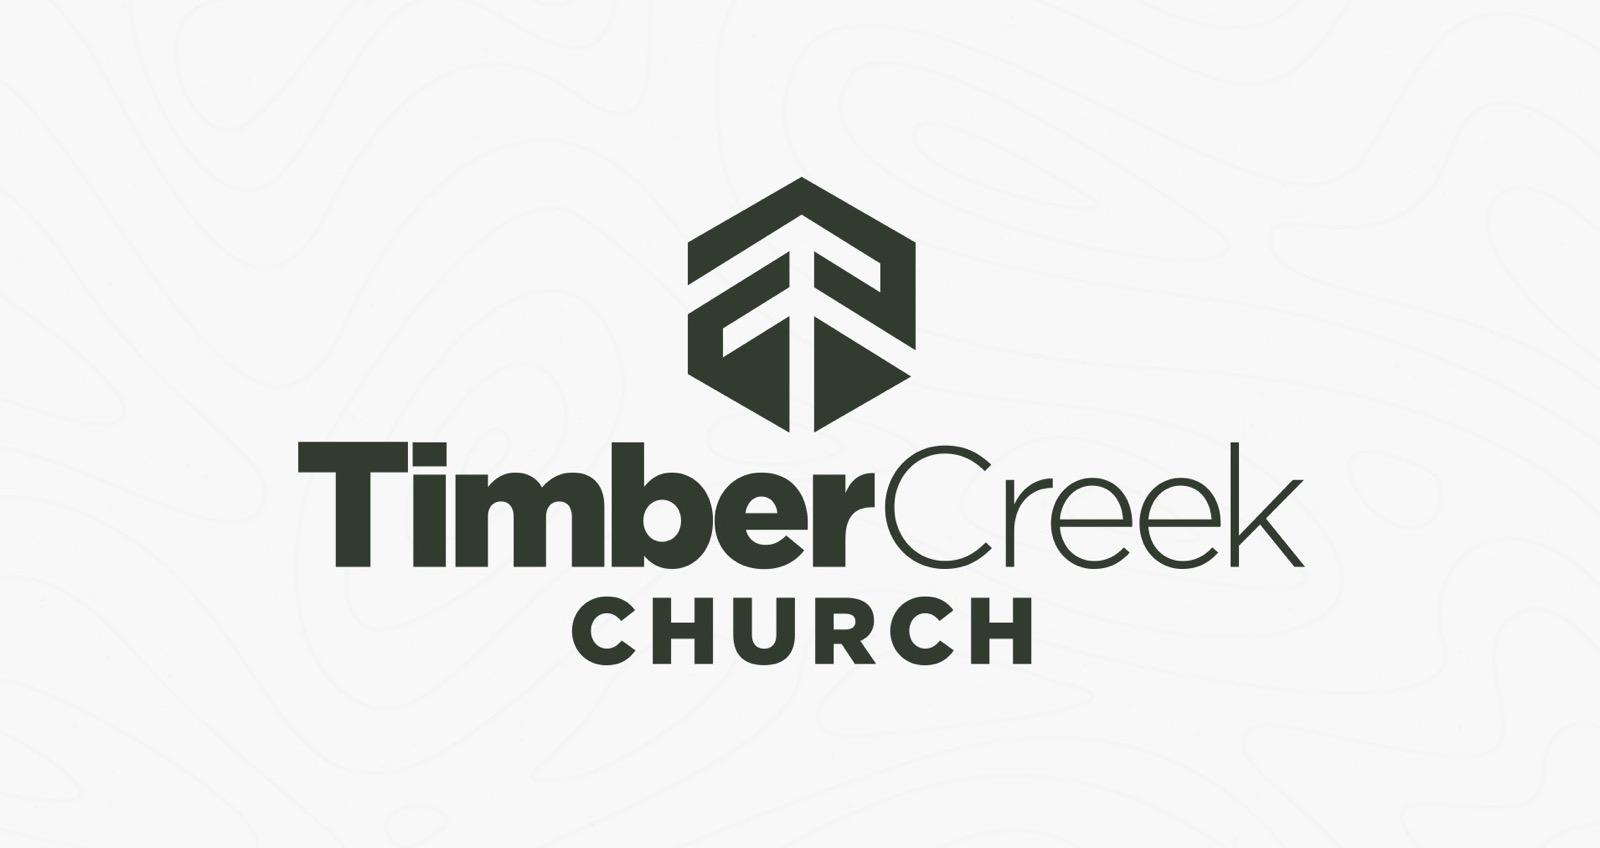 TimberCreek Church